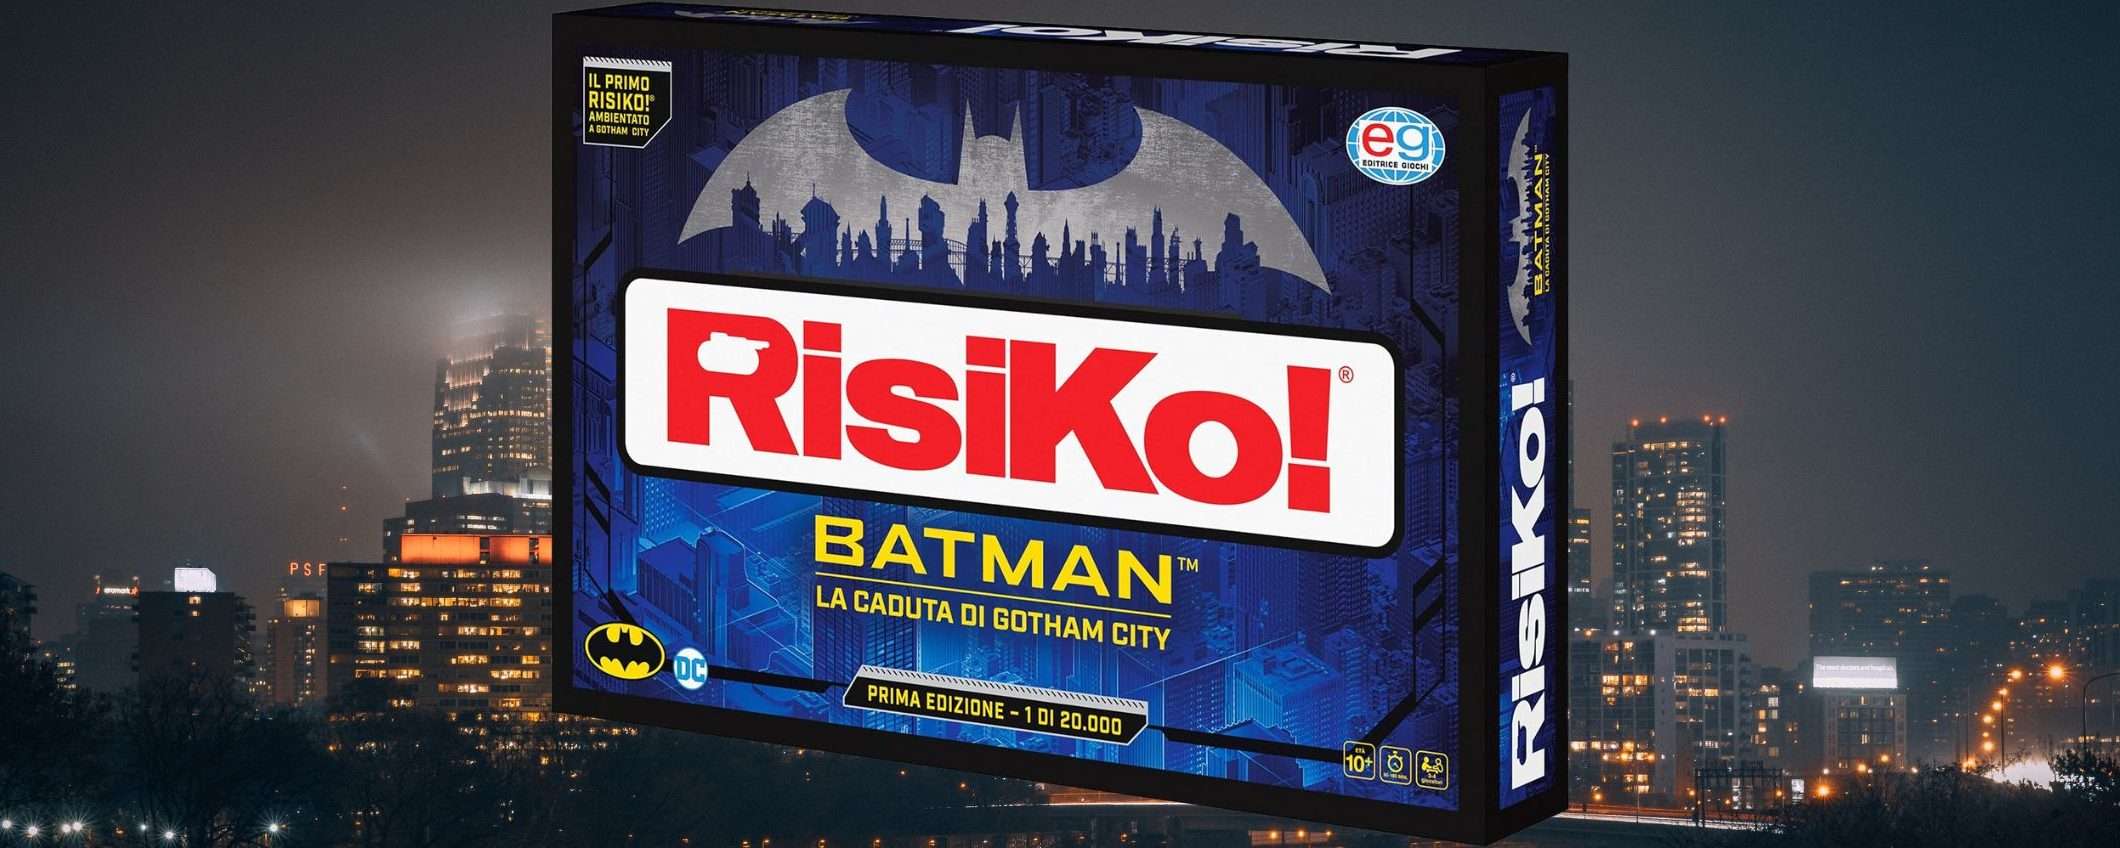 Il Risiko di Batman CROLLA di prezzo su Amazon (-71%)